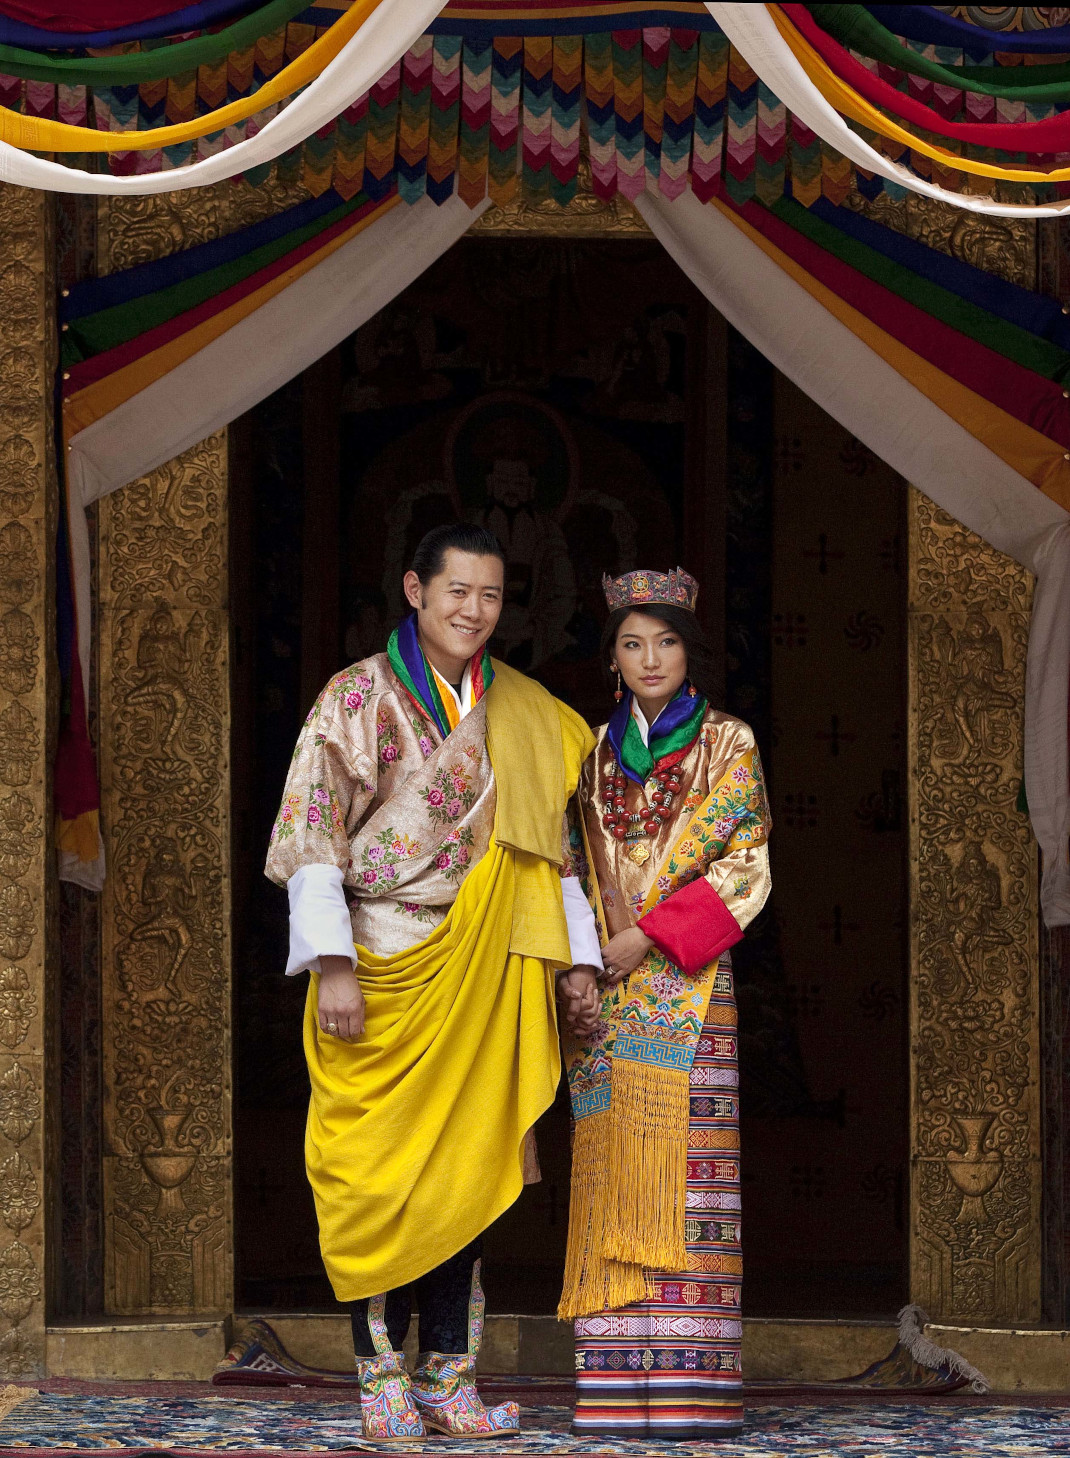 Ο βασιλιάς και η βασίλισσα του Μπουτάν με παραδοσιακό ένδυμα